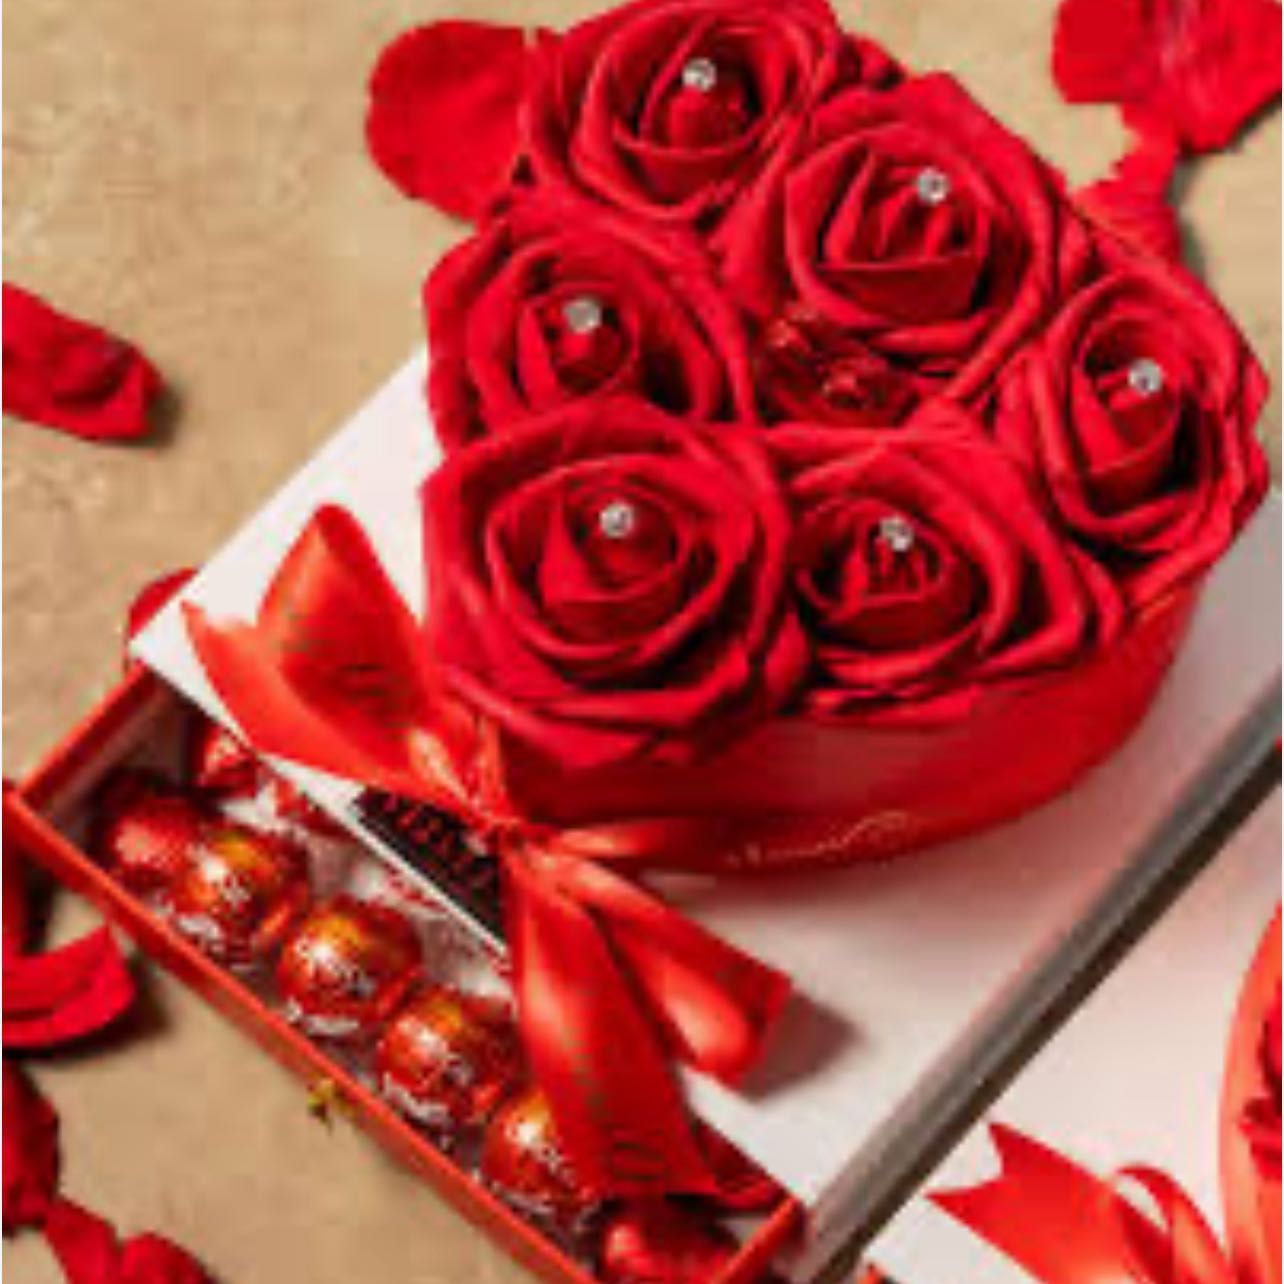 Chocolate and Roses portfolio